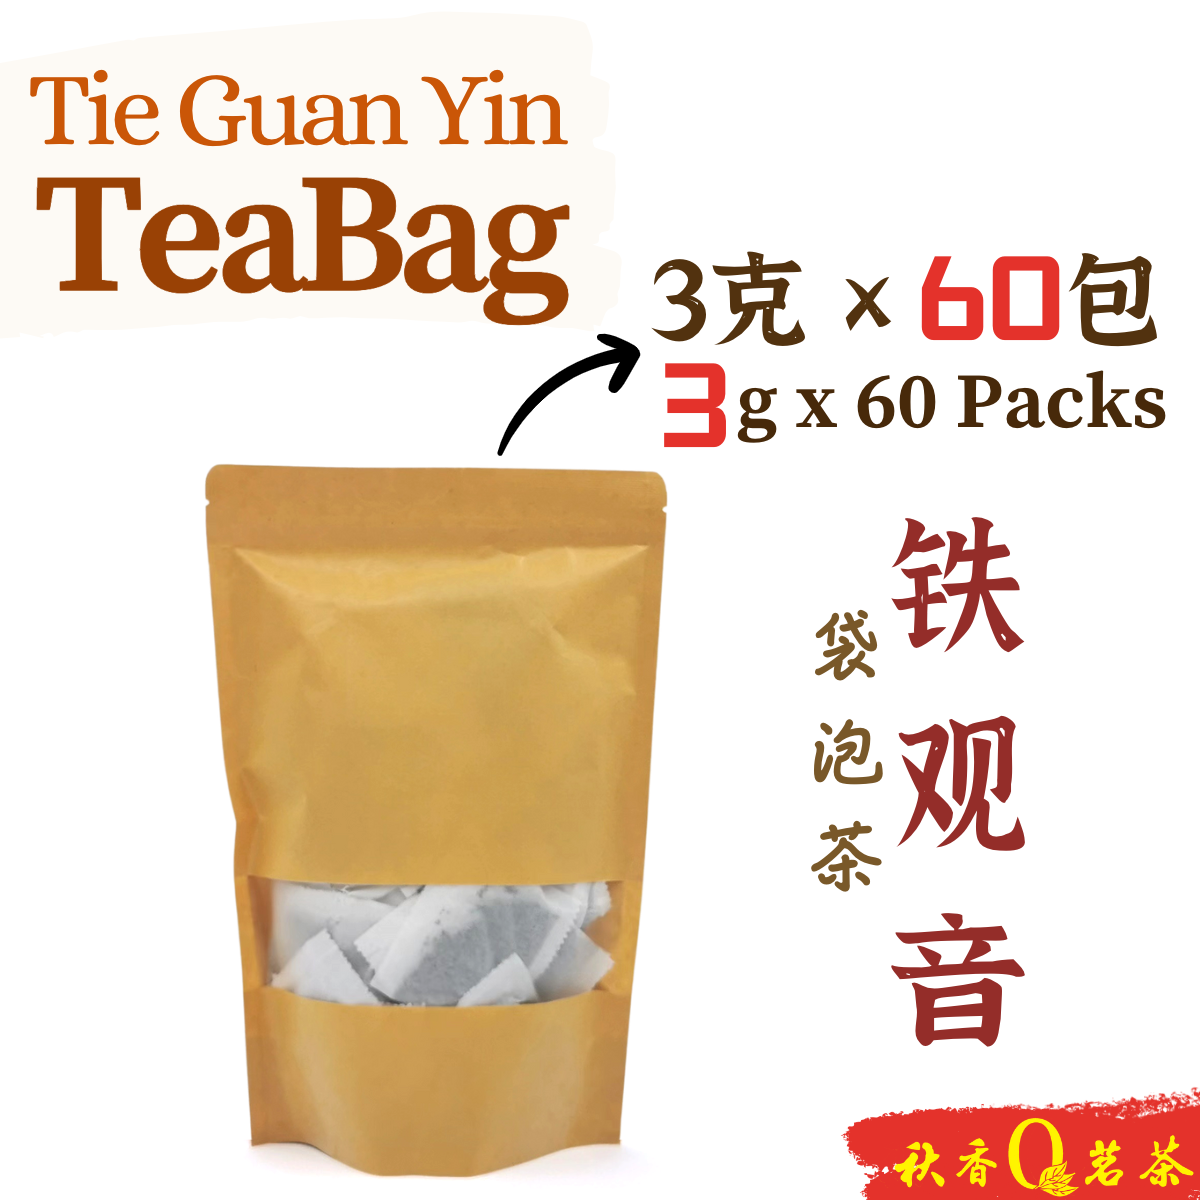 铁观音袋泡茶｜茶袋 Tie Guan Yin Teabag【60 Packs x 3g】|【乌龙茶 Oolong tea】